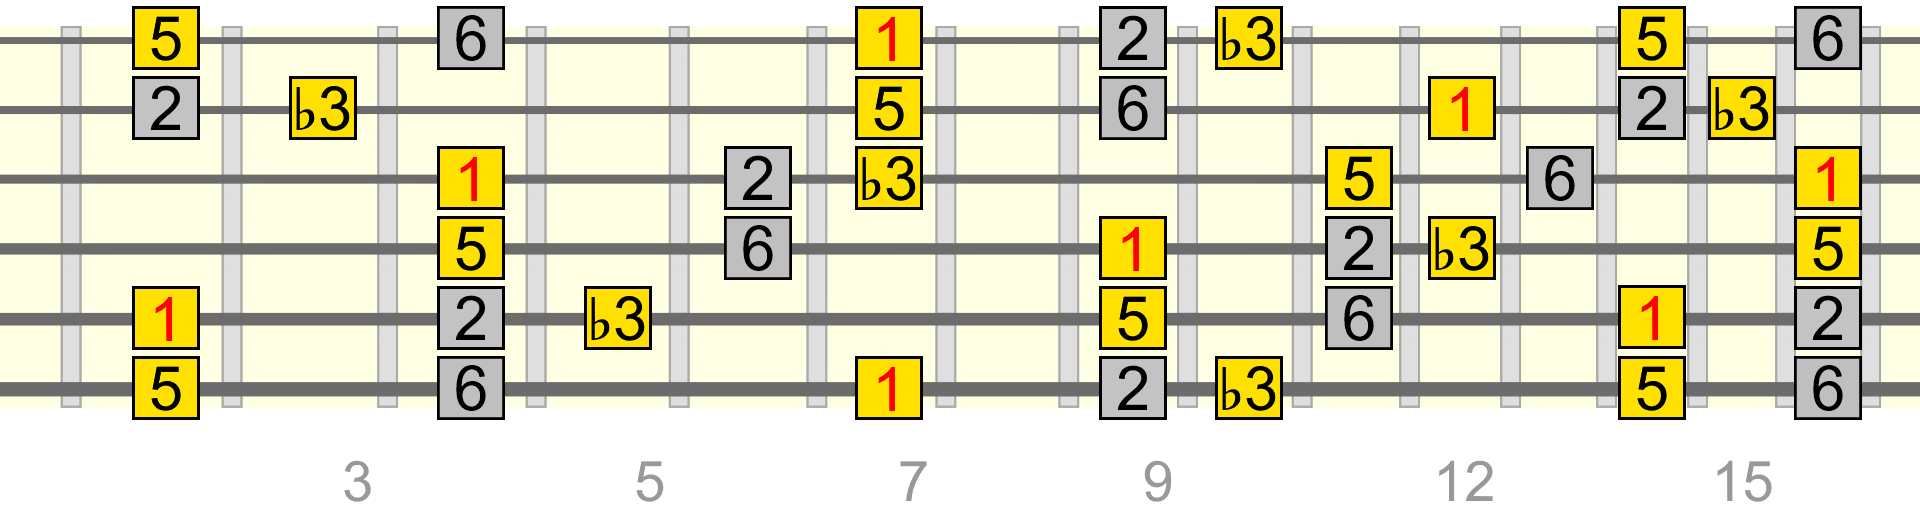 bm-add-2-6-pattern